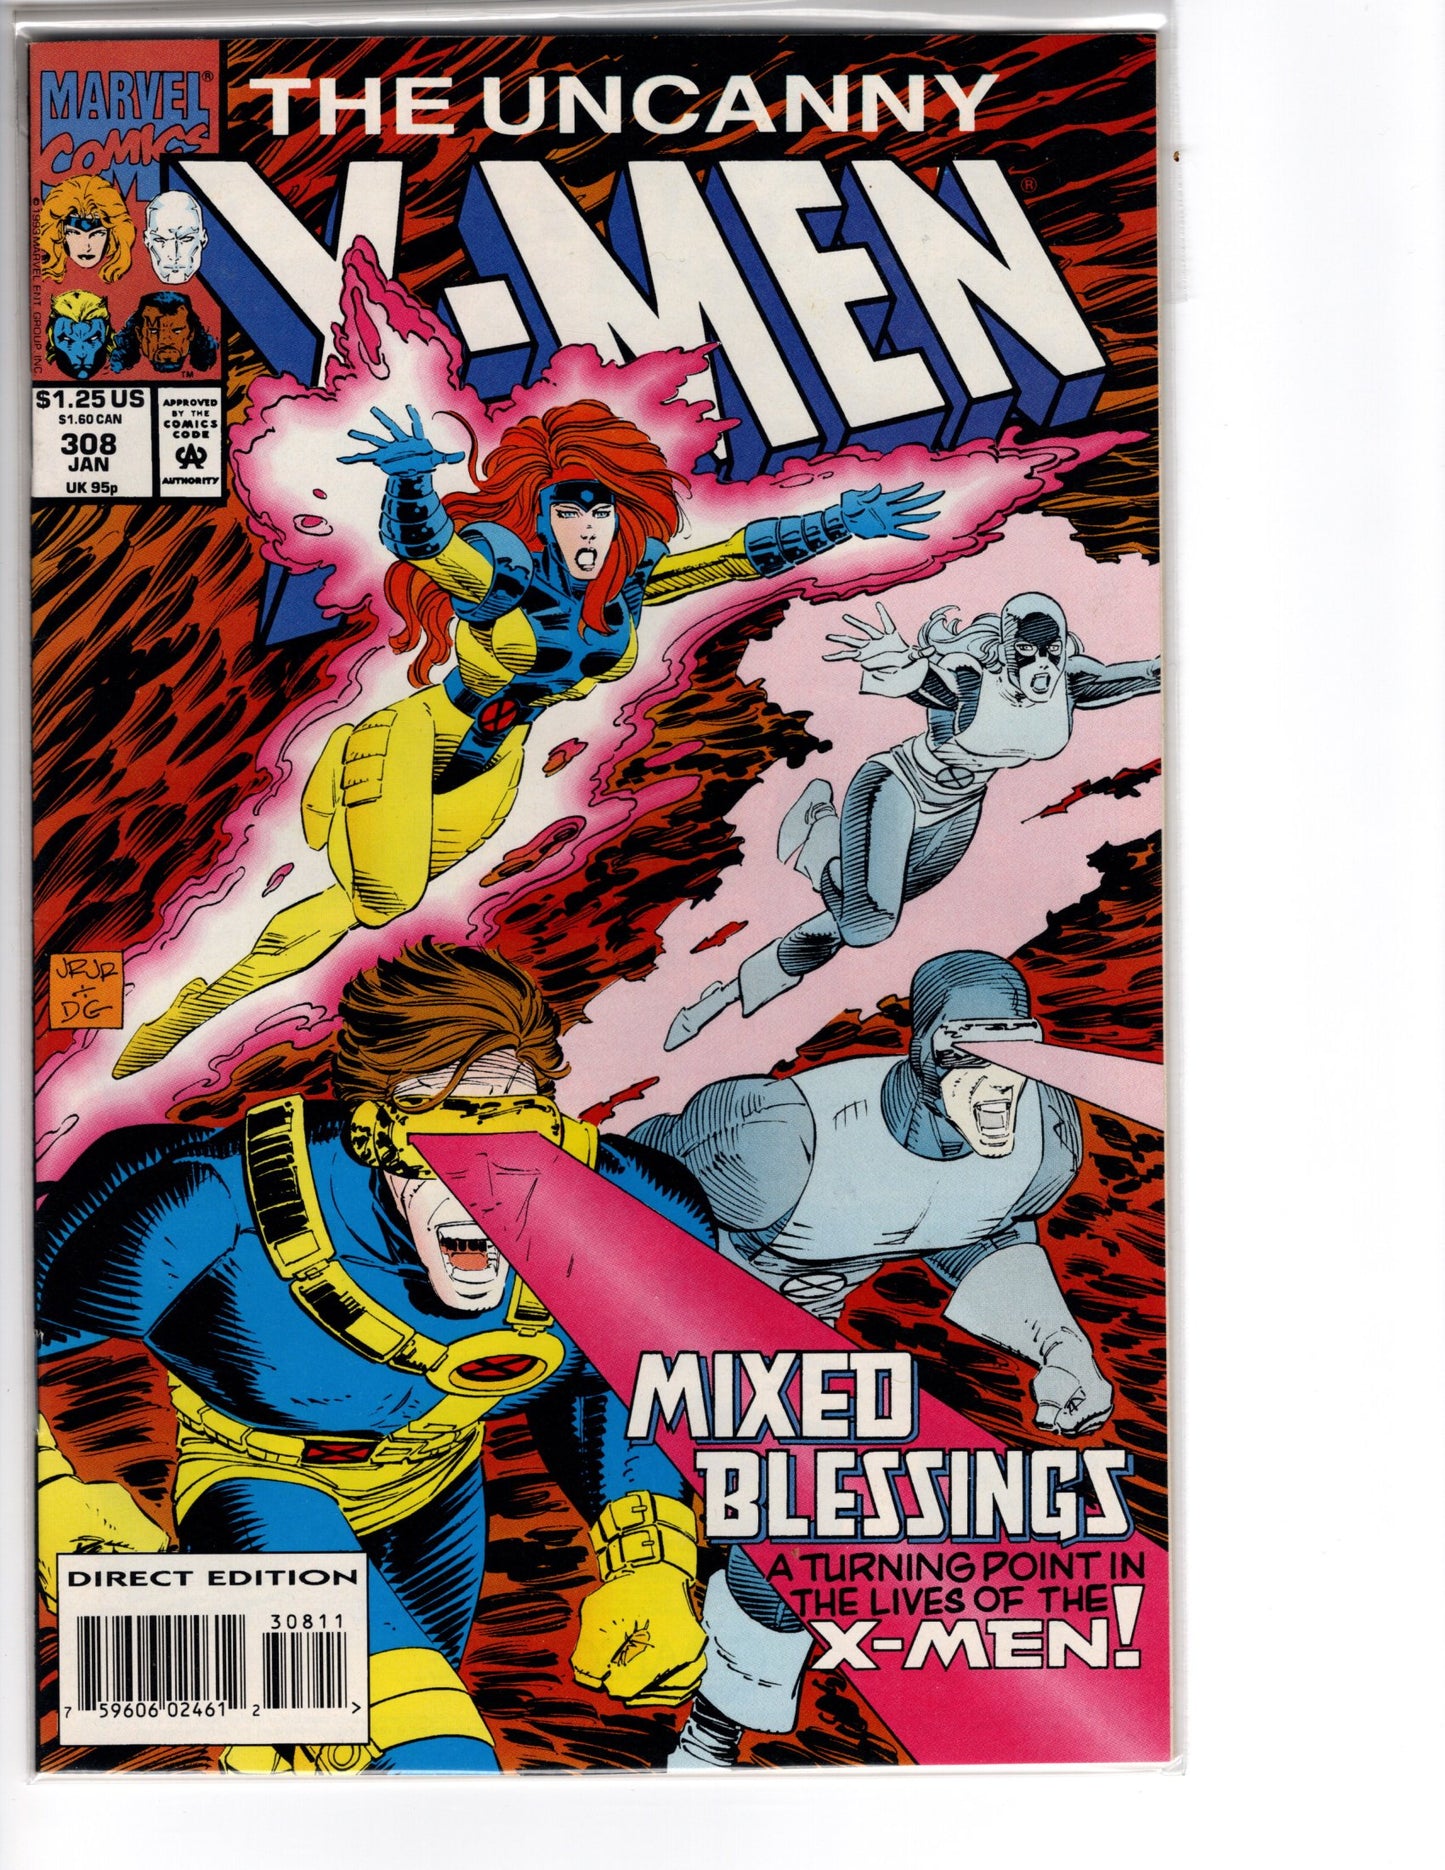 The Uncanny X-Men No. 308